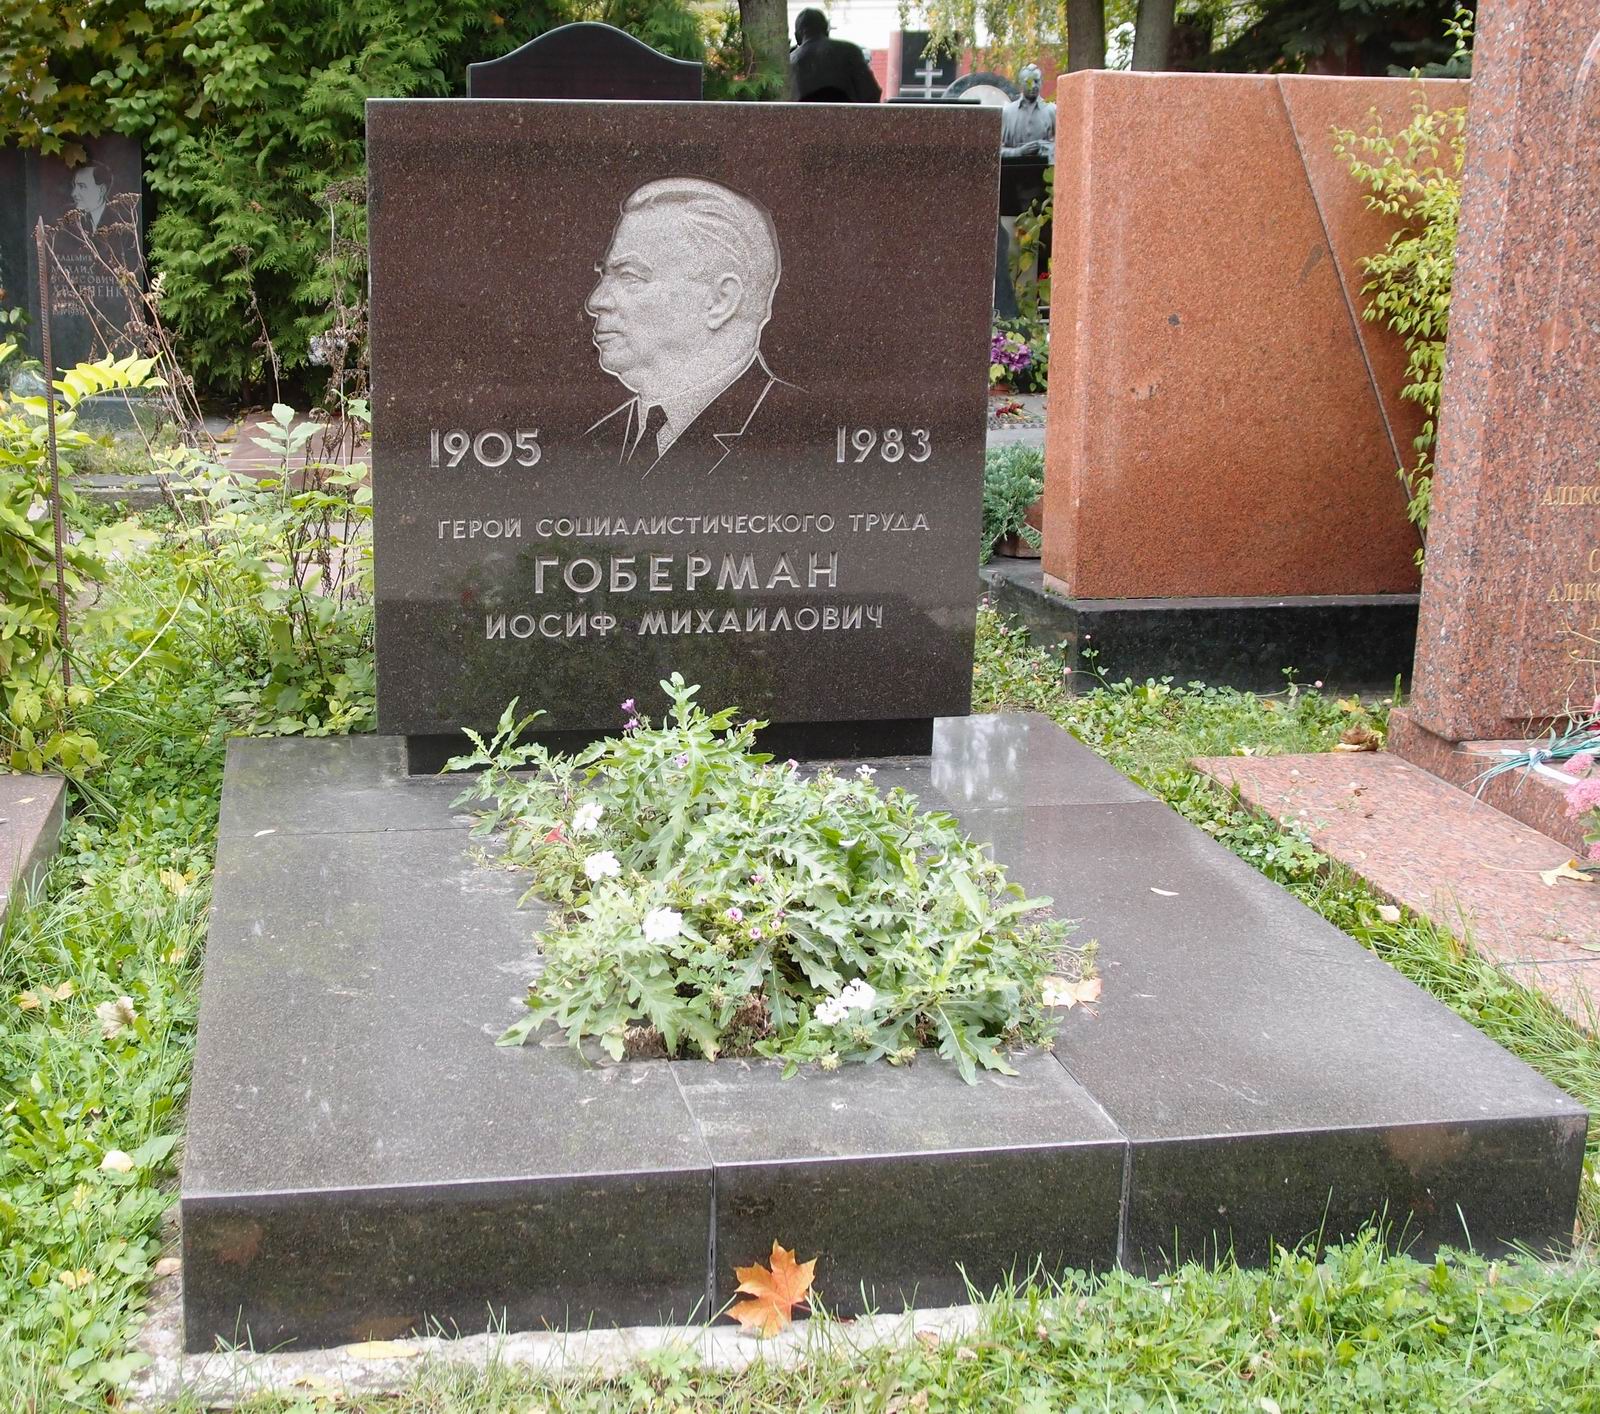 Памятник на могиле Гобермана И.М. (1905–1983), арх. Ю.Калмыков, на Новодевичьем кладбище (10–1–16).